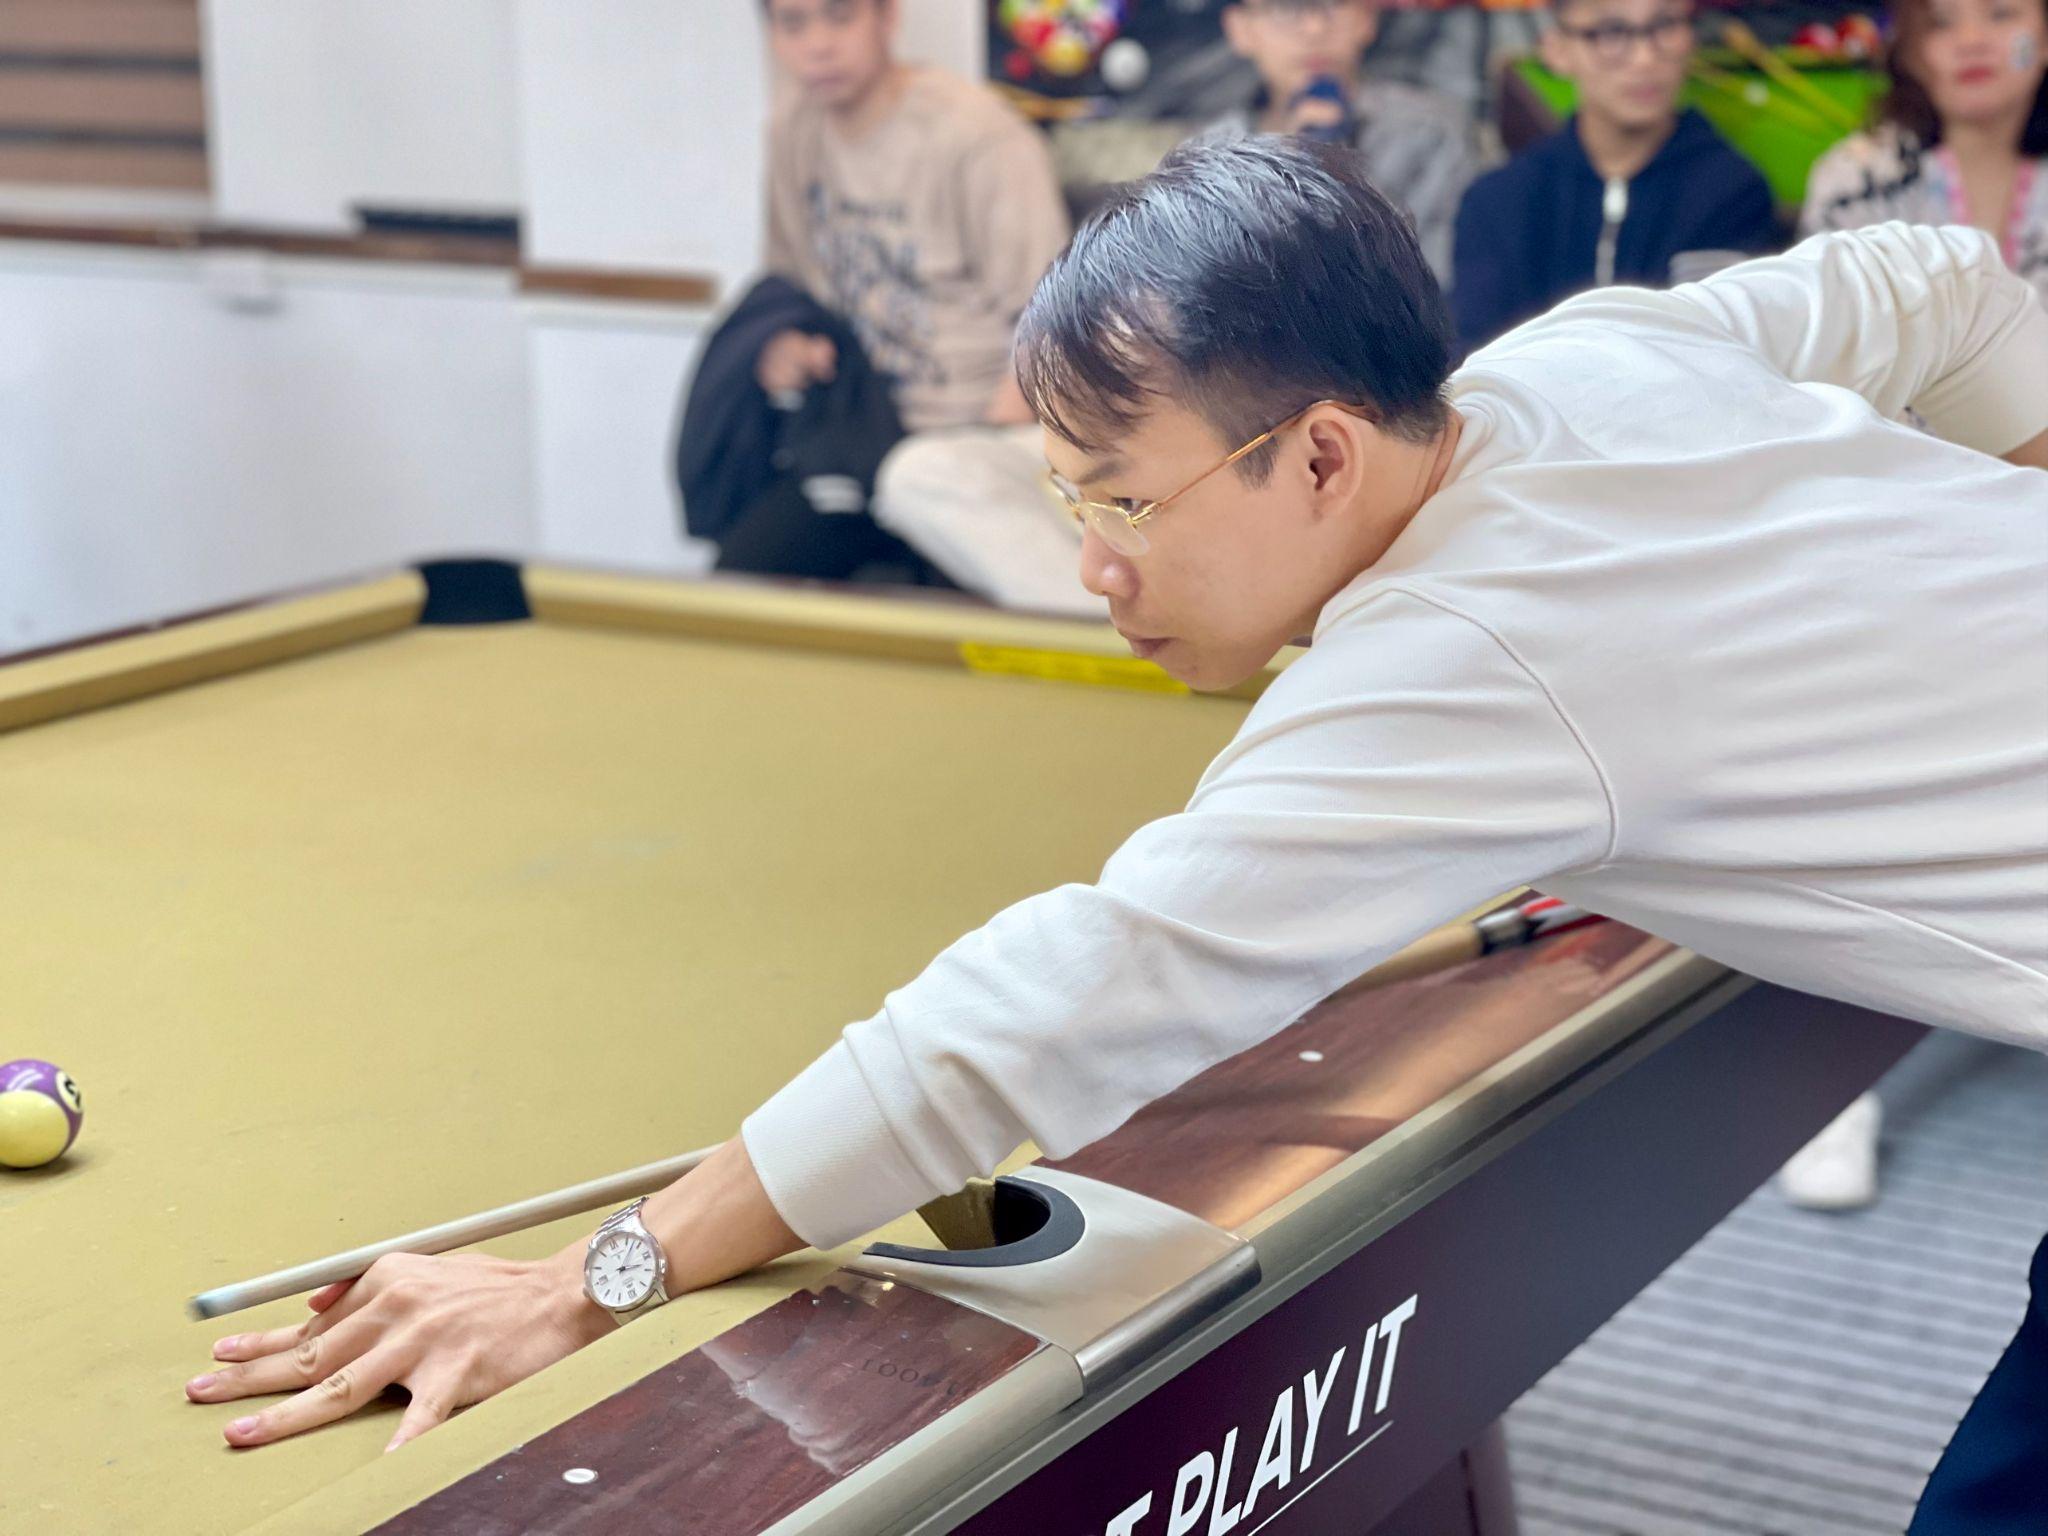 FAI - Billiards Championship 2022 - 11